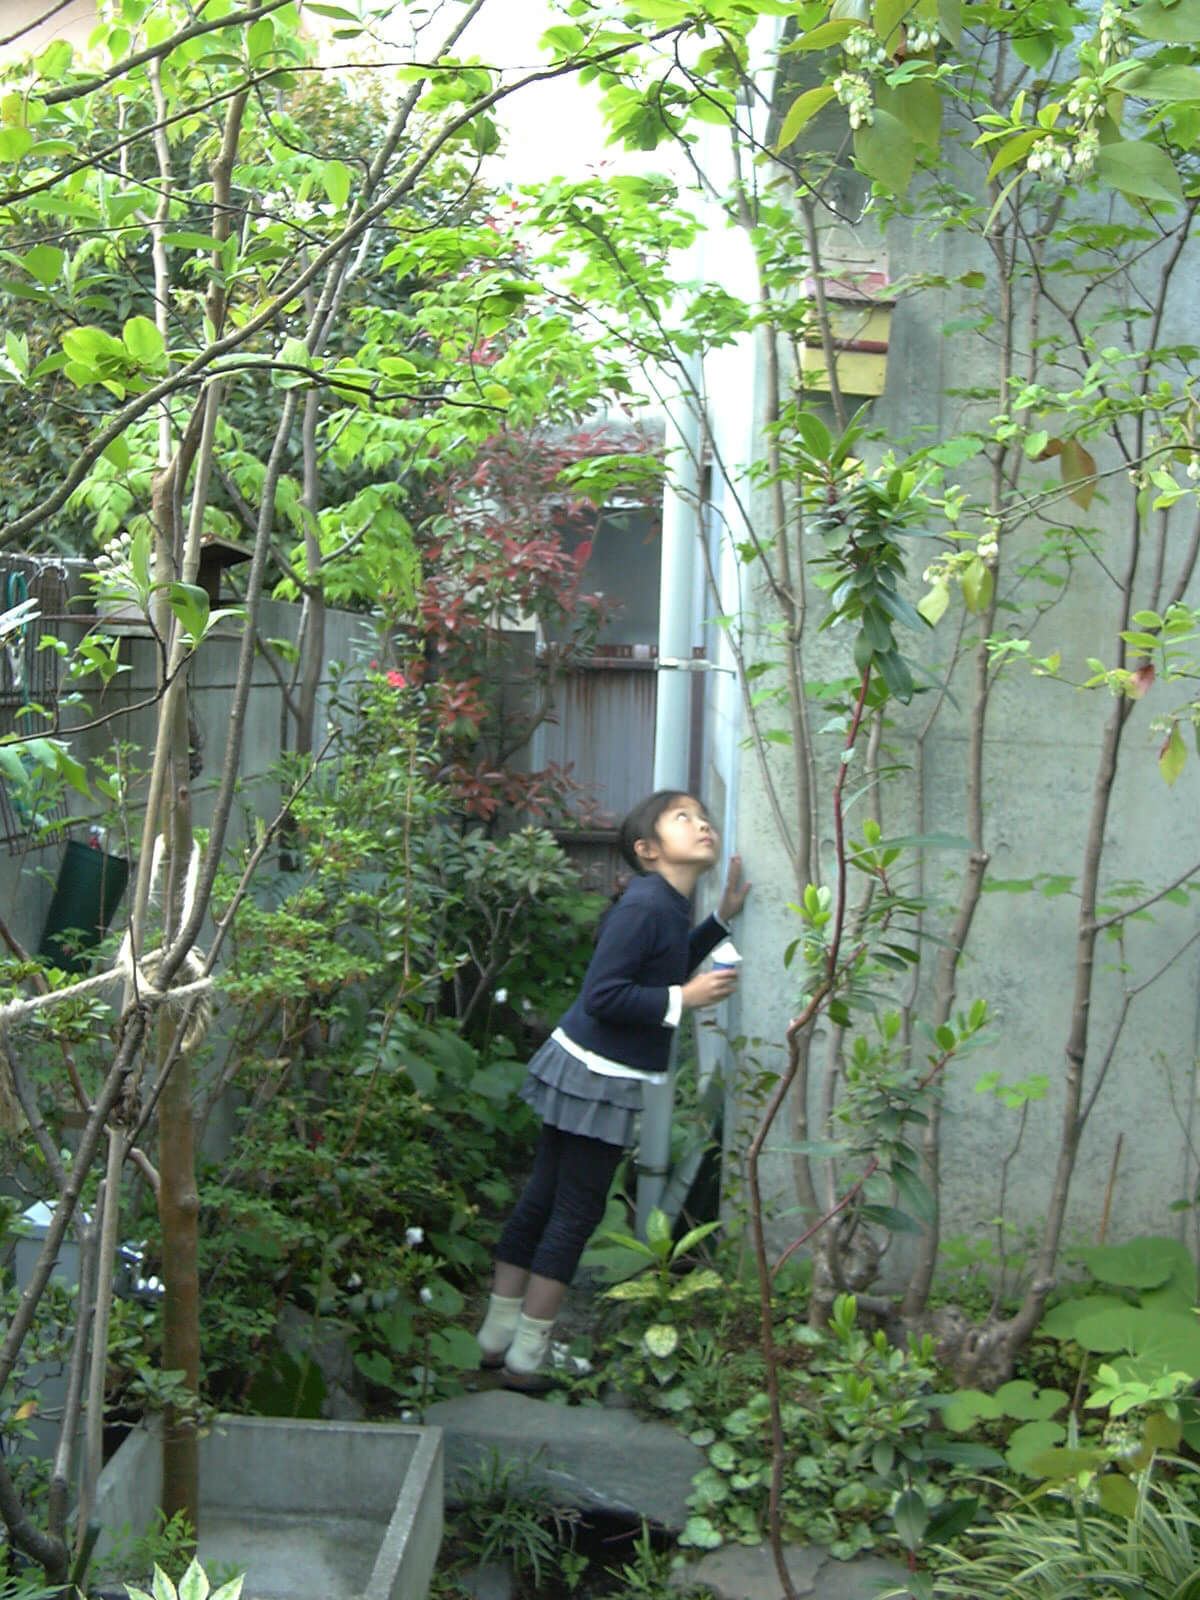 シジュウカラが庭の巣箱で子育て中で、下で声を聞く子供